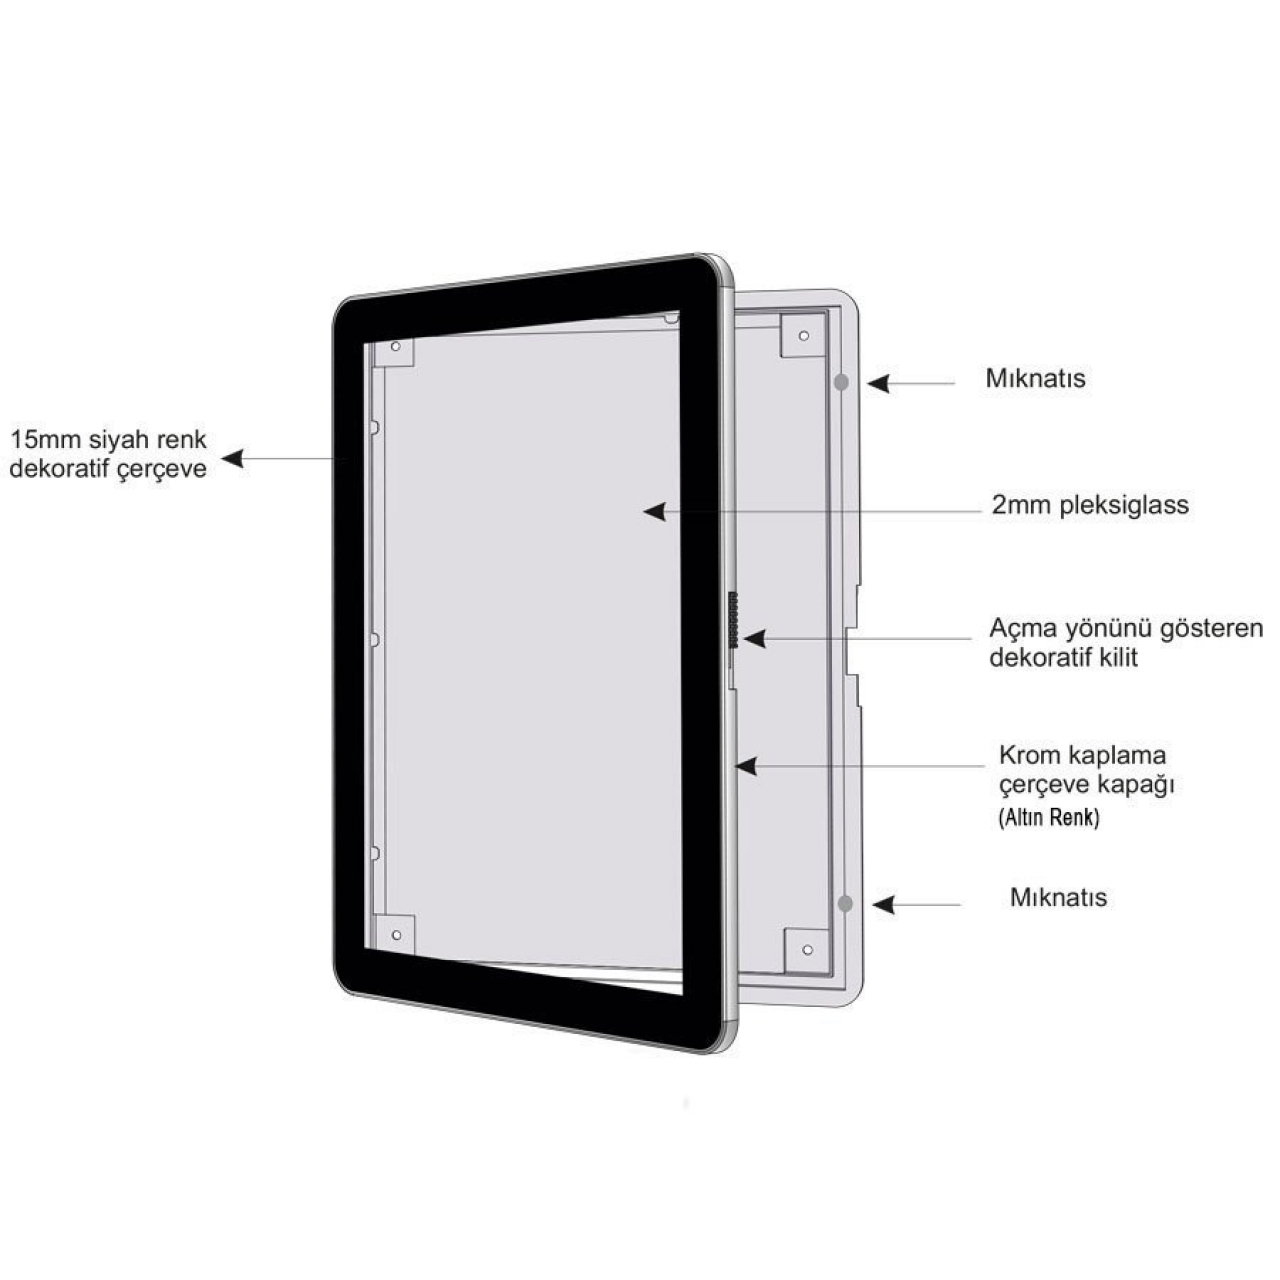 Bariyer Üstü A3 Krom Çerçeve - Tablet Bilgisayar Görünümlü